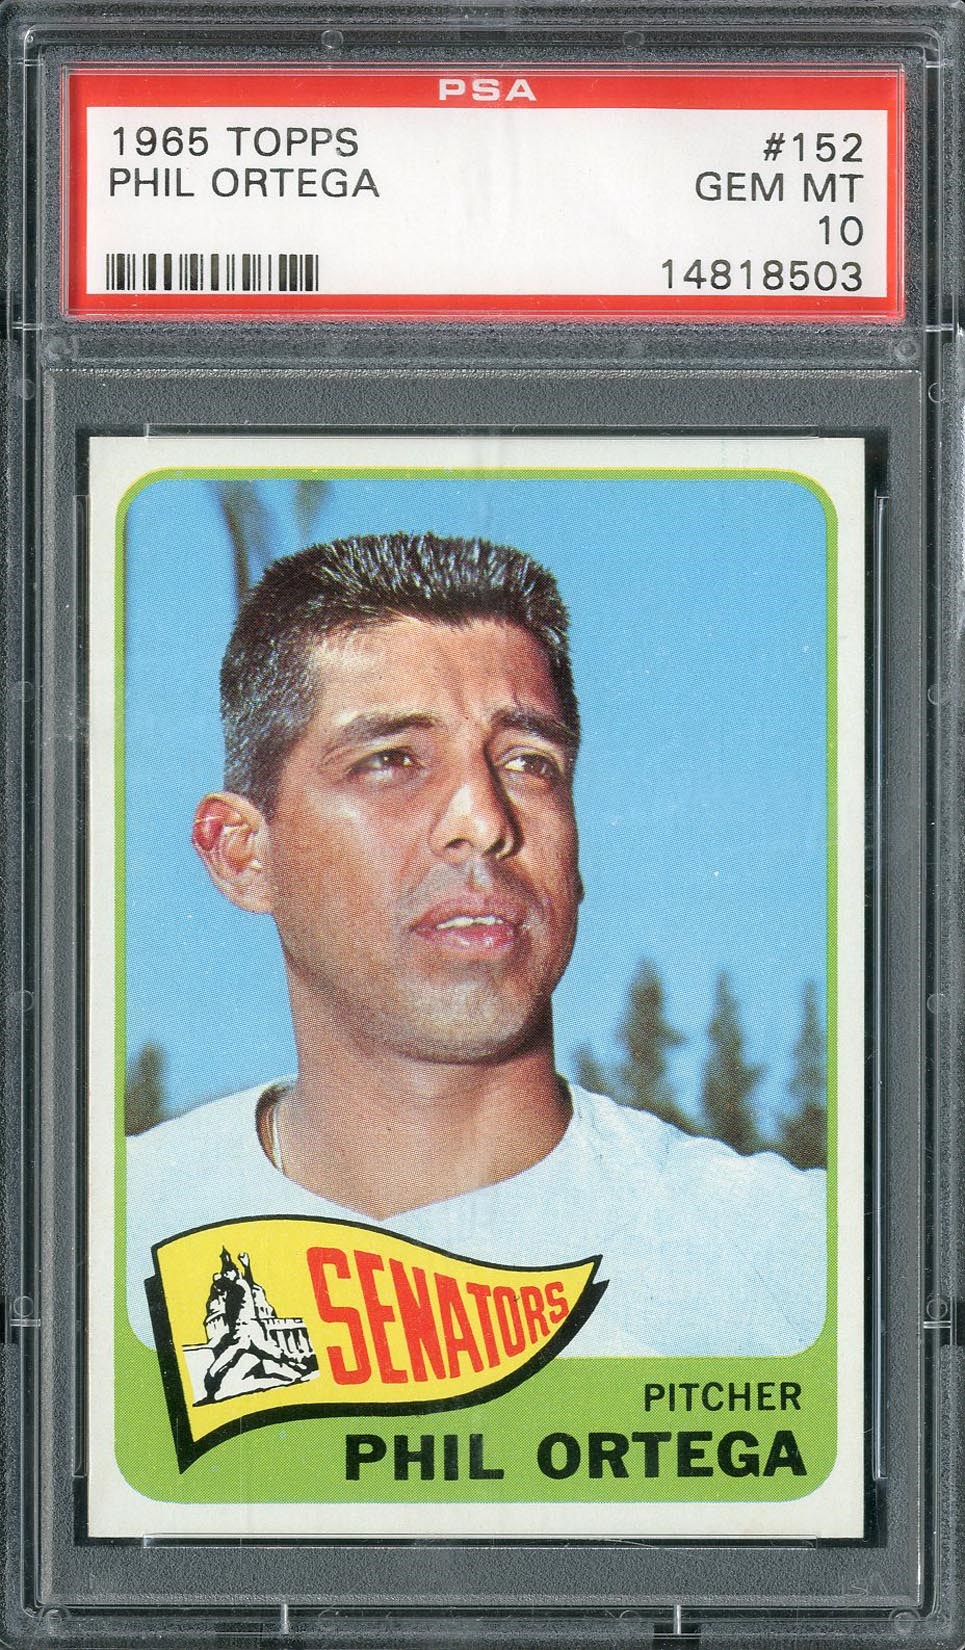 Baseball and Trading Cards - 1965 Topps Phil Ortega #152 PSA GEM MT 10